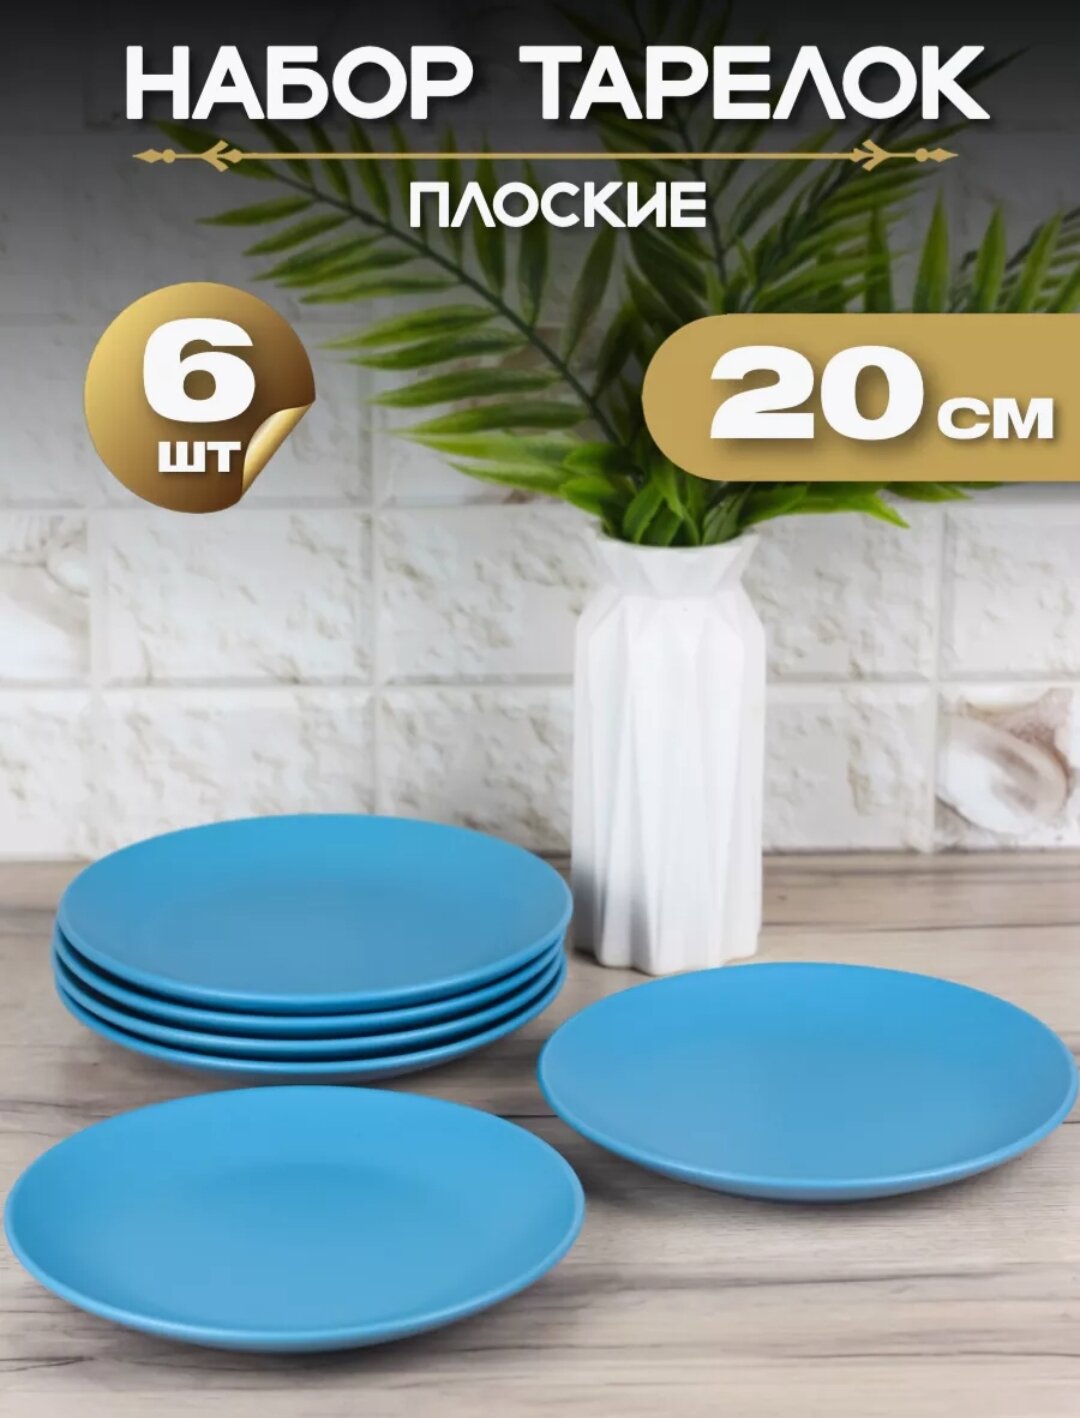 Тарелка плоская "Синий матовый" d20 см/ Набор тарелок 6 шт